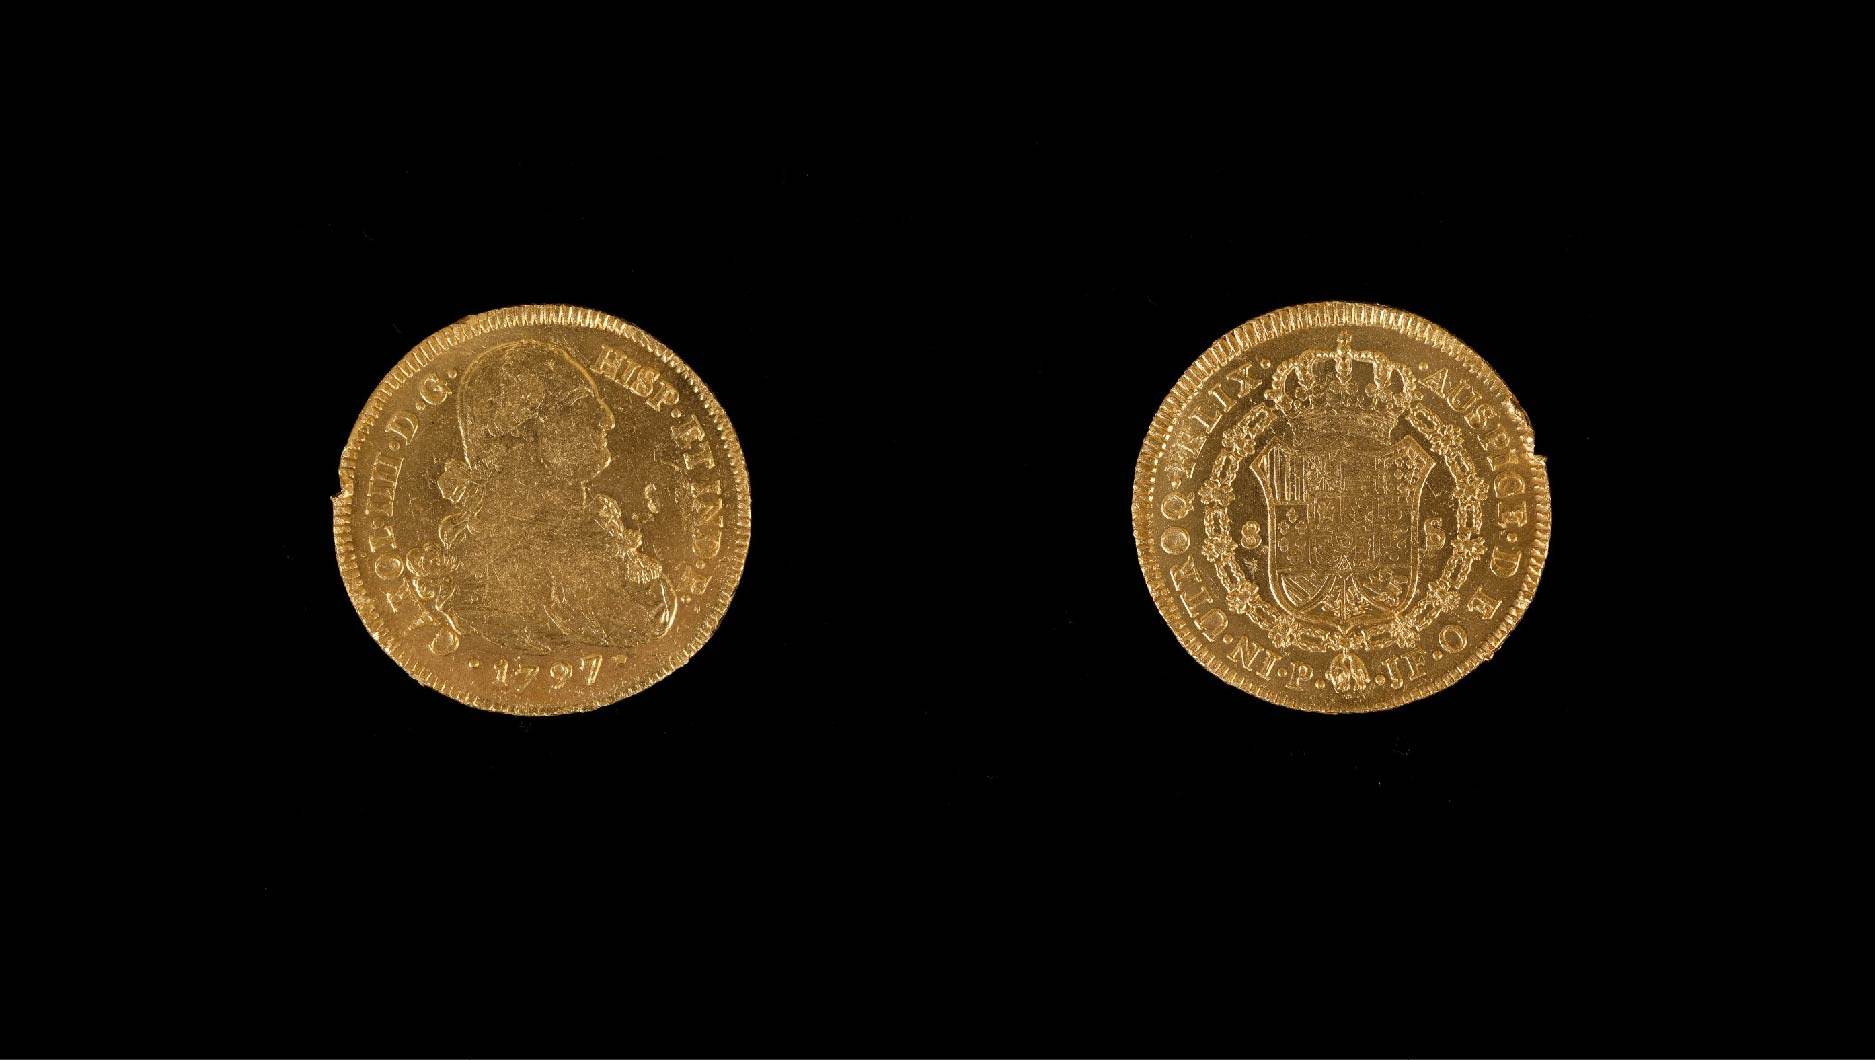 Moneda de ocho escudos de Carlos IV / Tesoro de Ntra Sra de las Mercedes / Año 1797